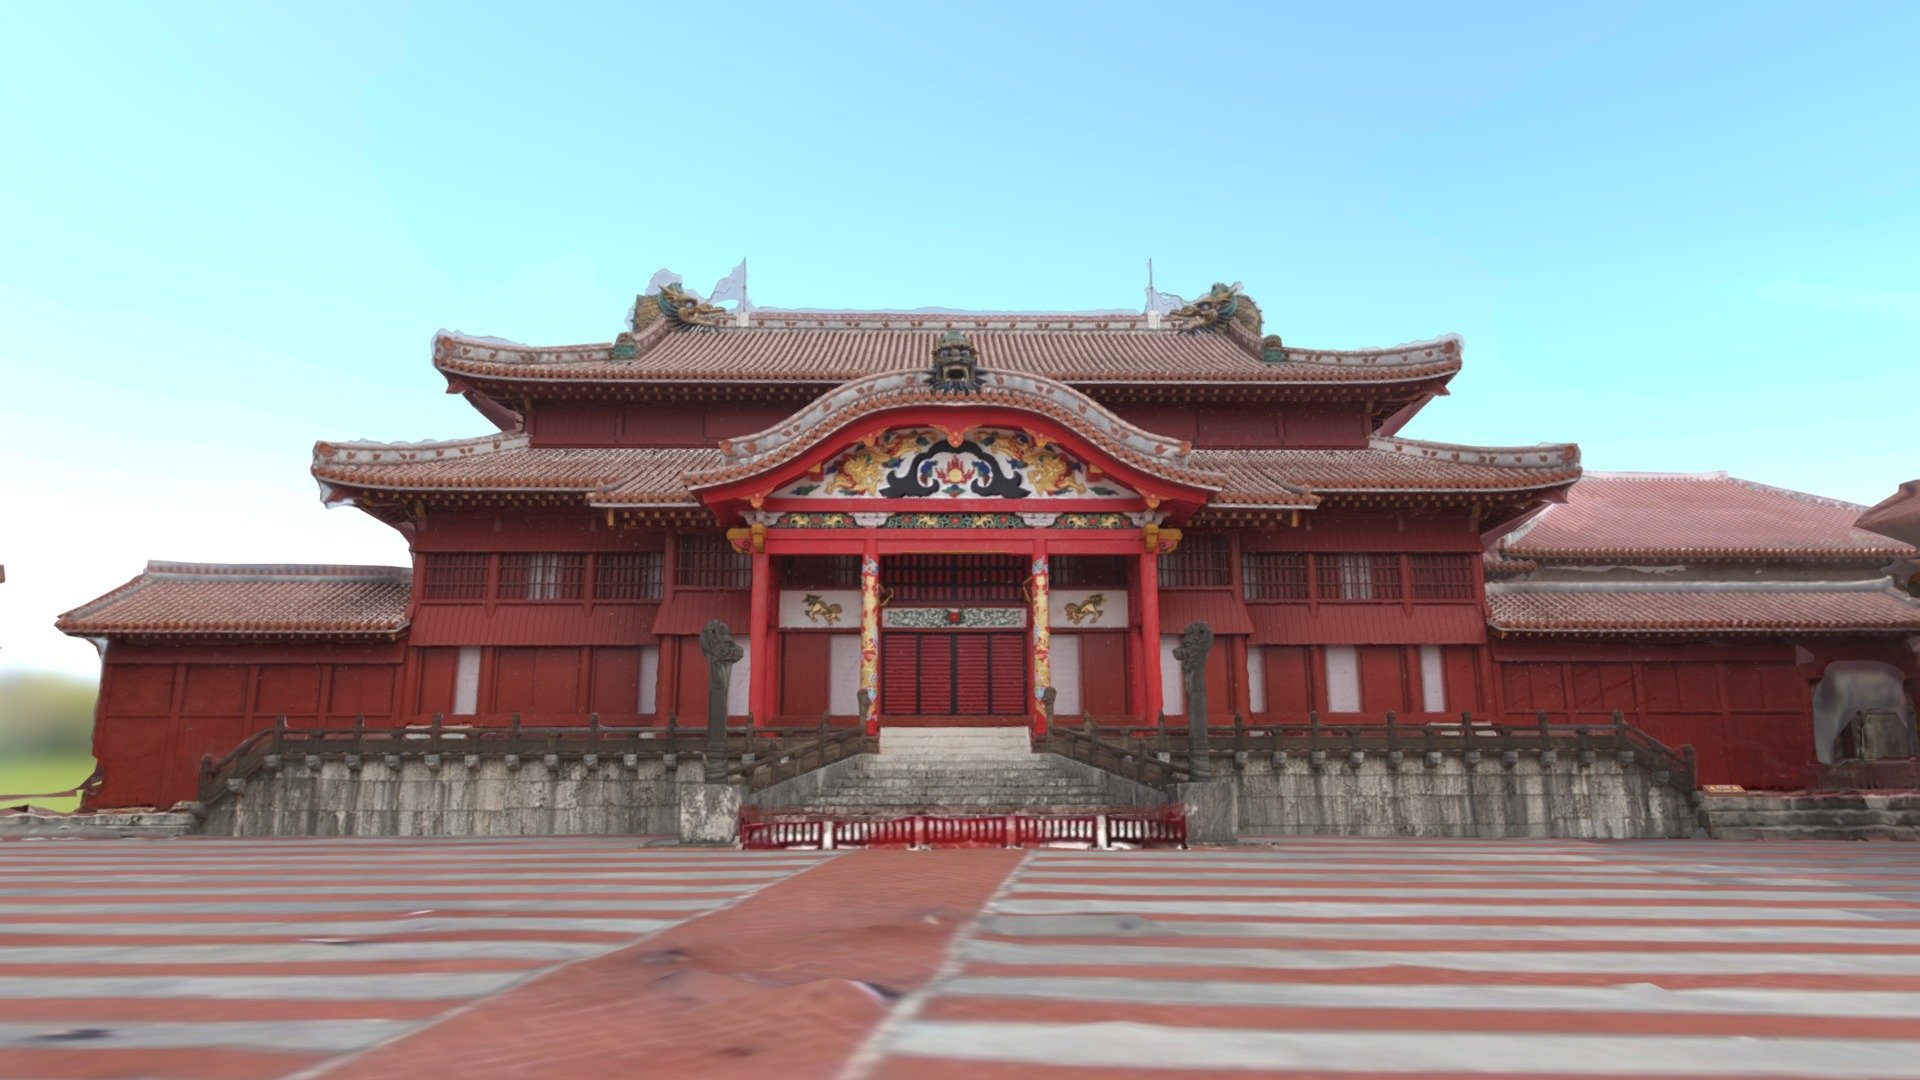 みんなの首里城デジタル復元プロジェクト| Shuri Castle Digital 